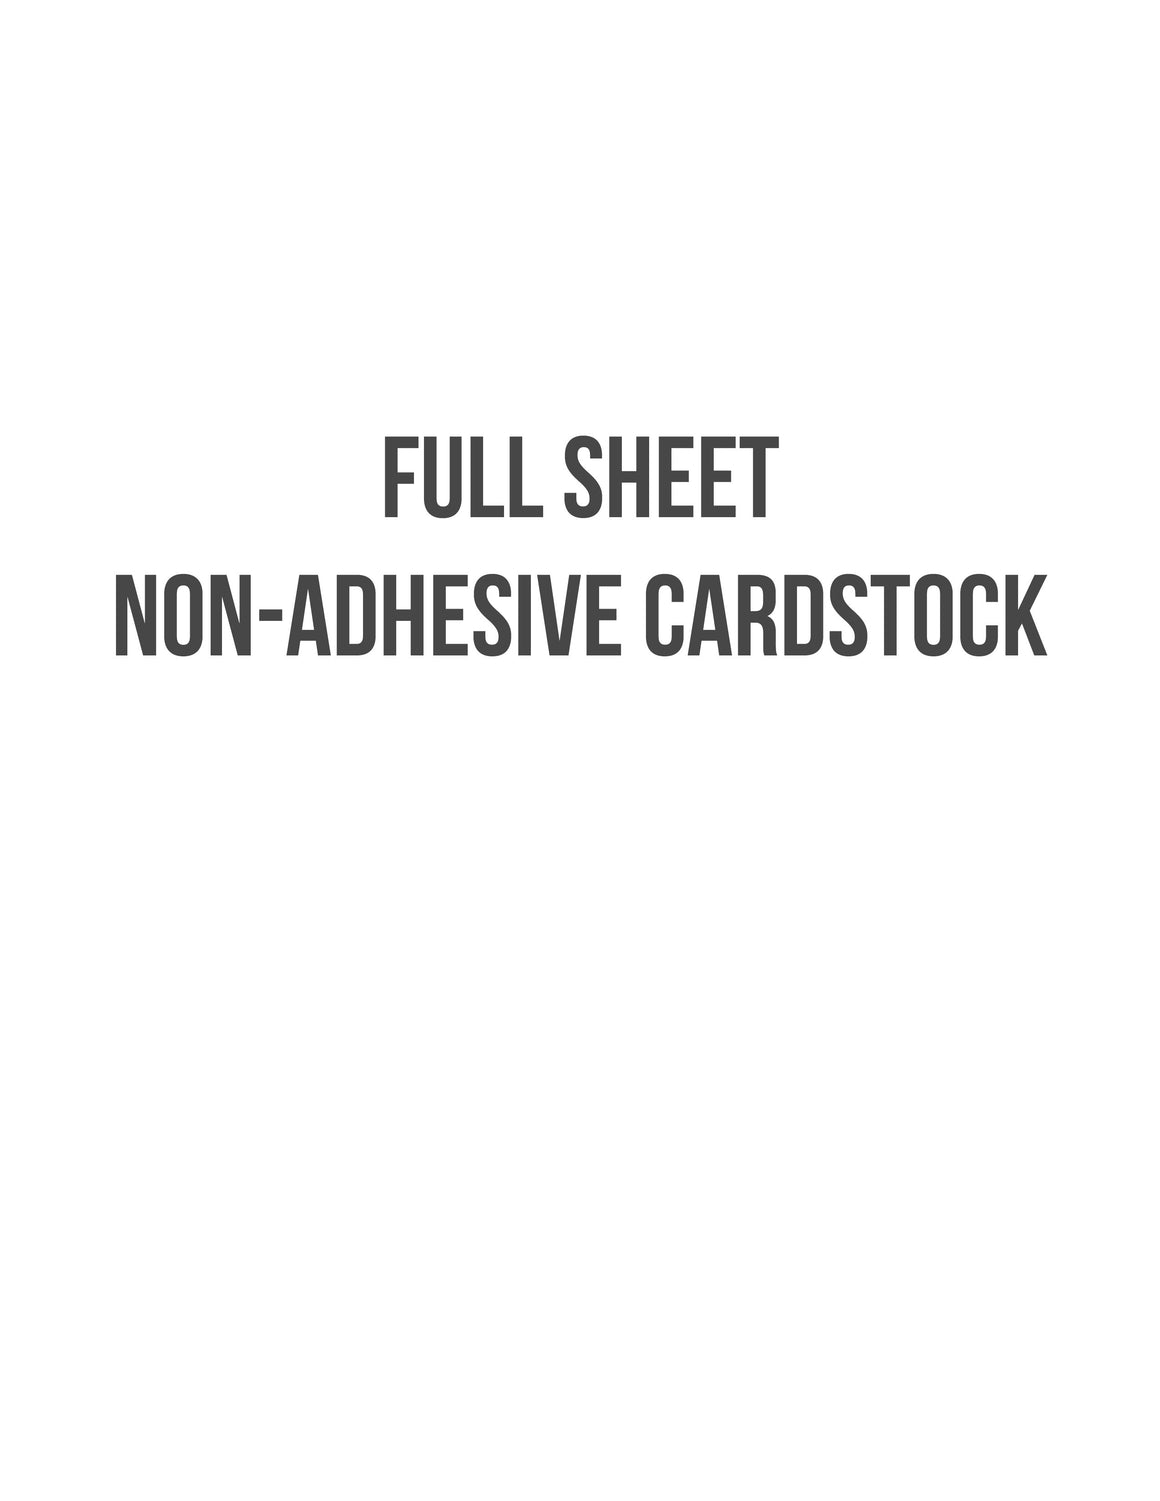 cardstock-labelsbythesheet